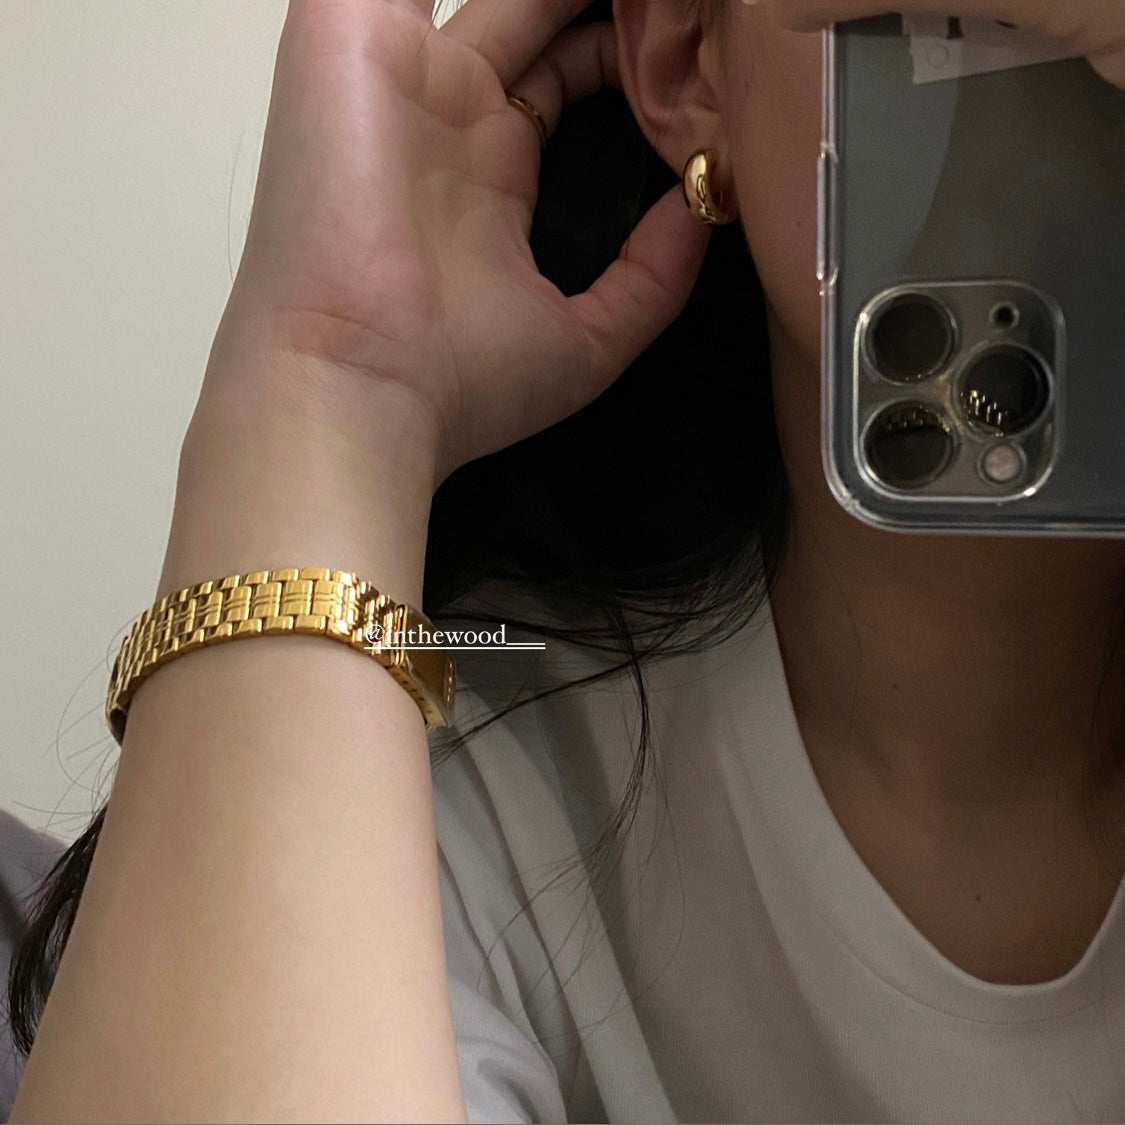 [925silver] Lune Earrings